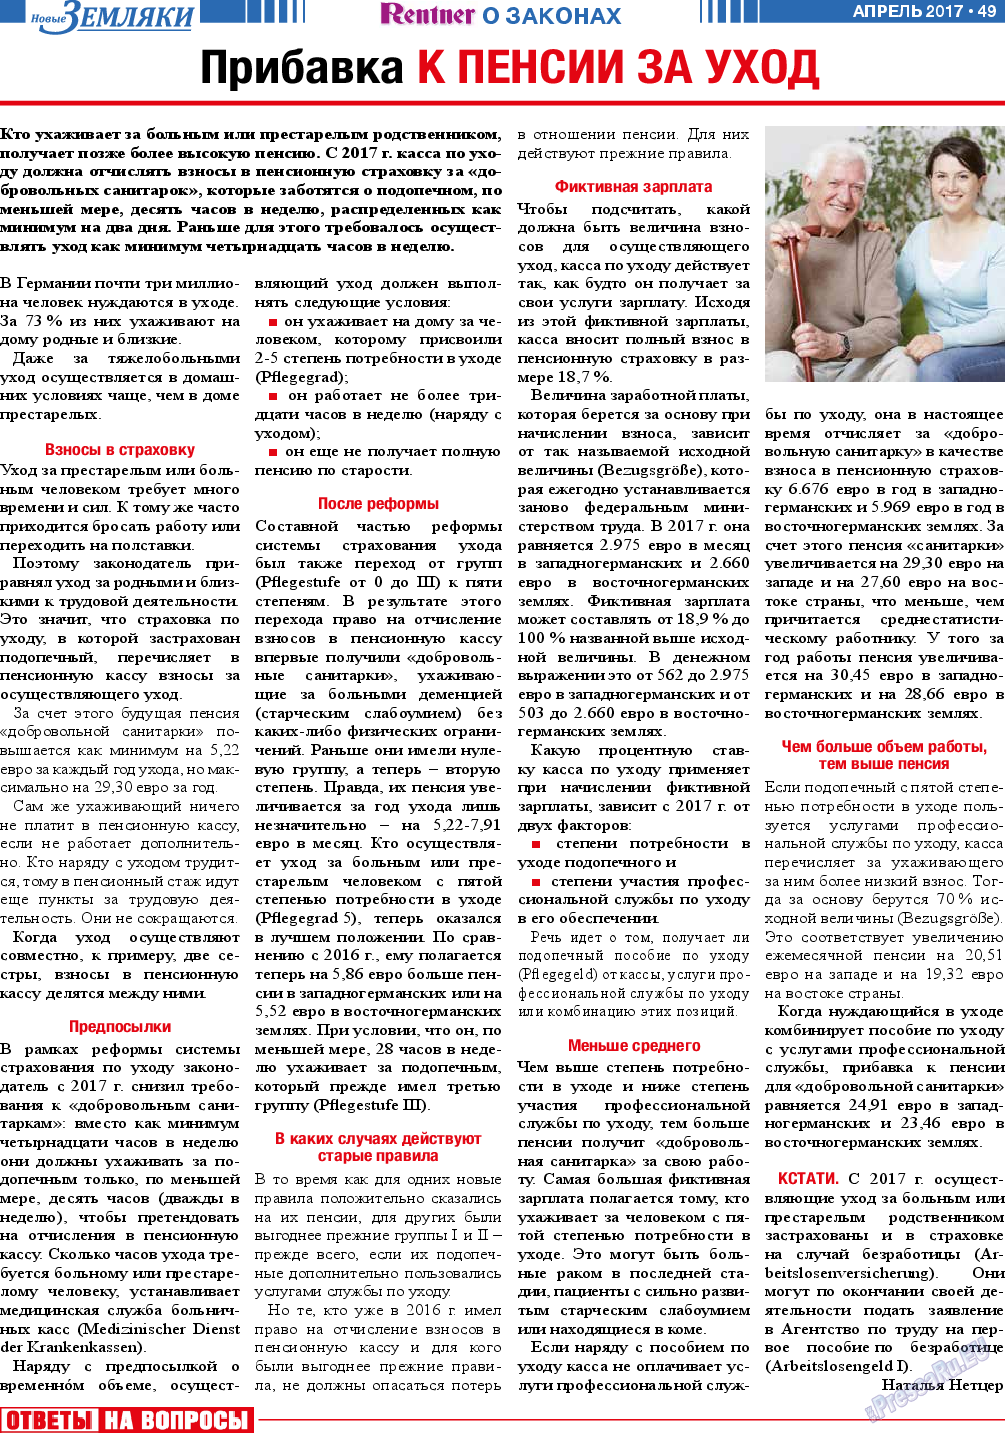 Новые Земляки, газета. 2017 №4 стр.49